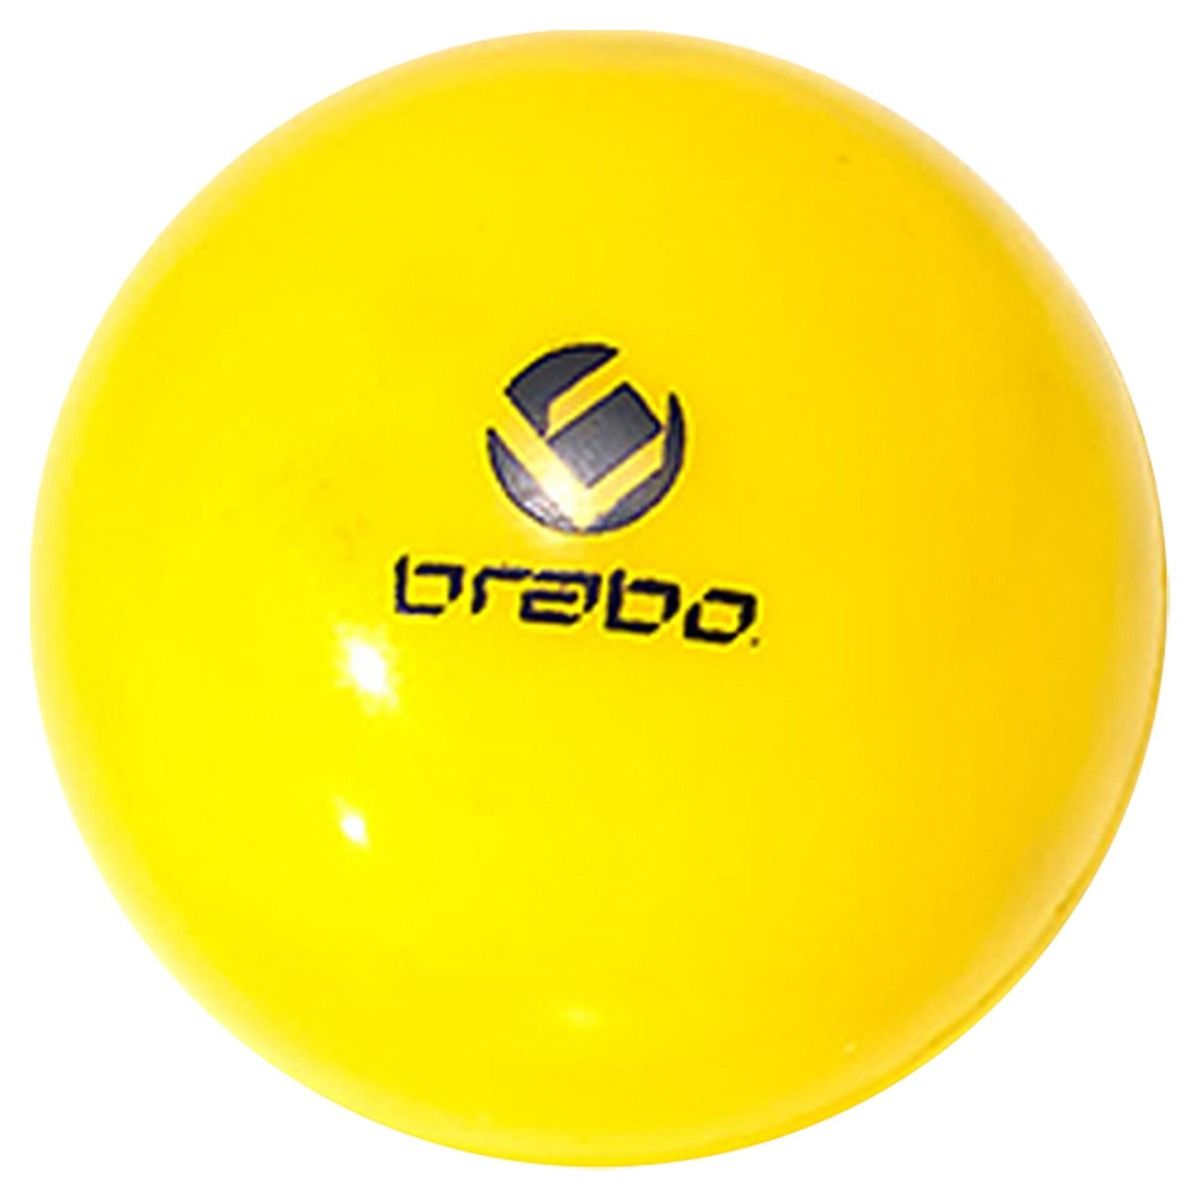 Brabo Indoor Hockeybal